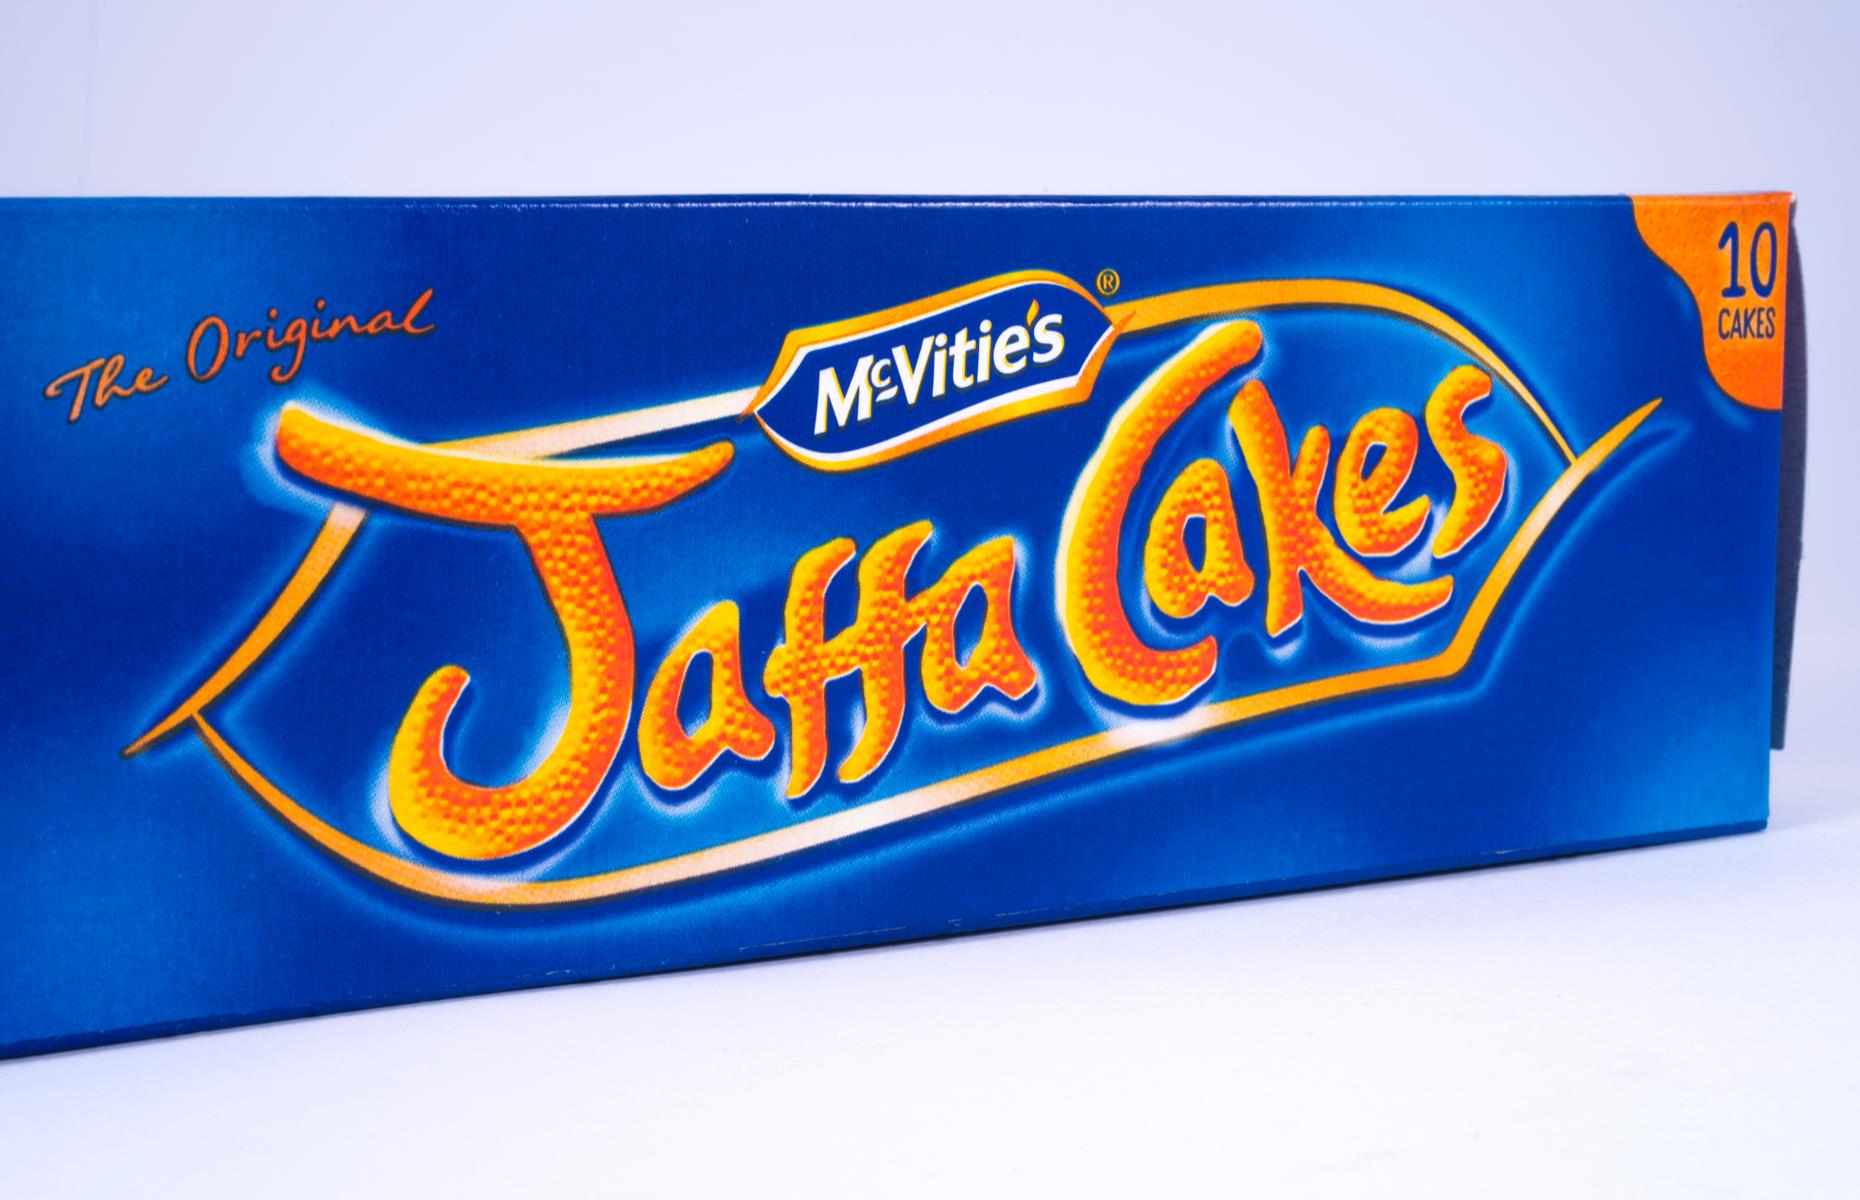 Jaffa Cakes have Scottish origins